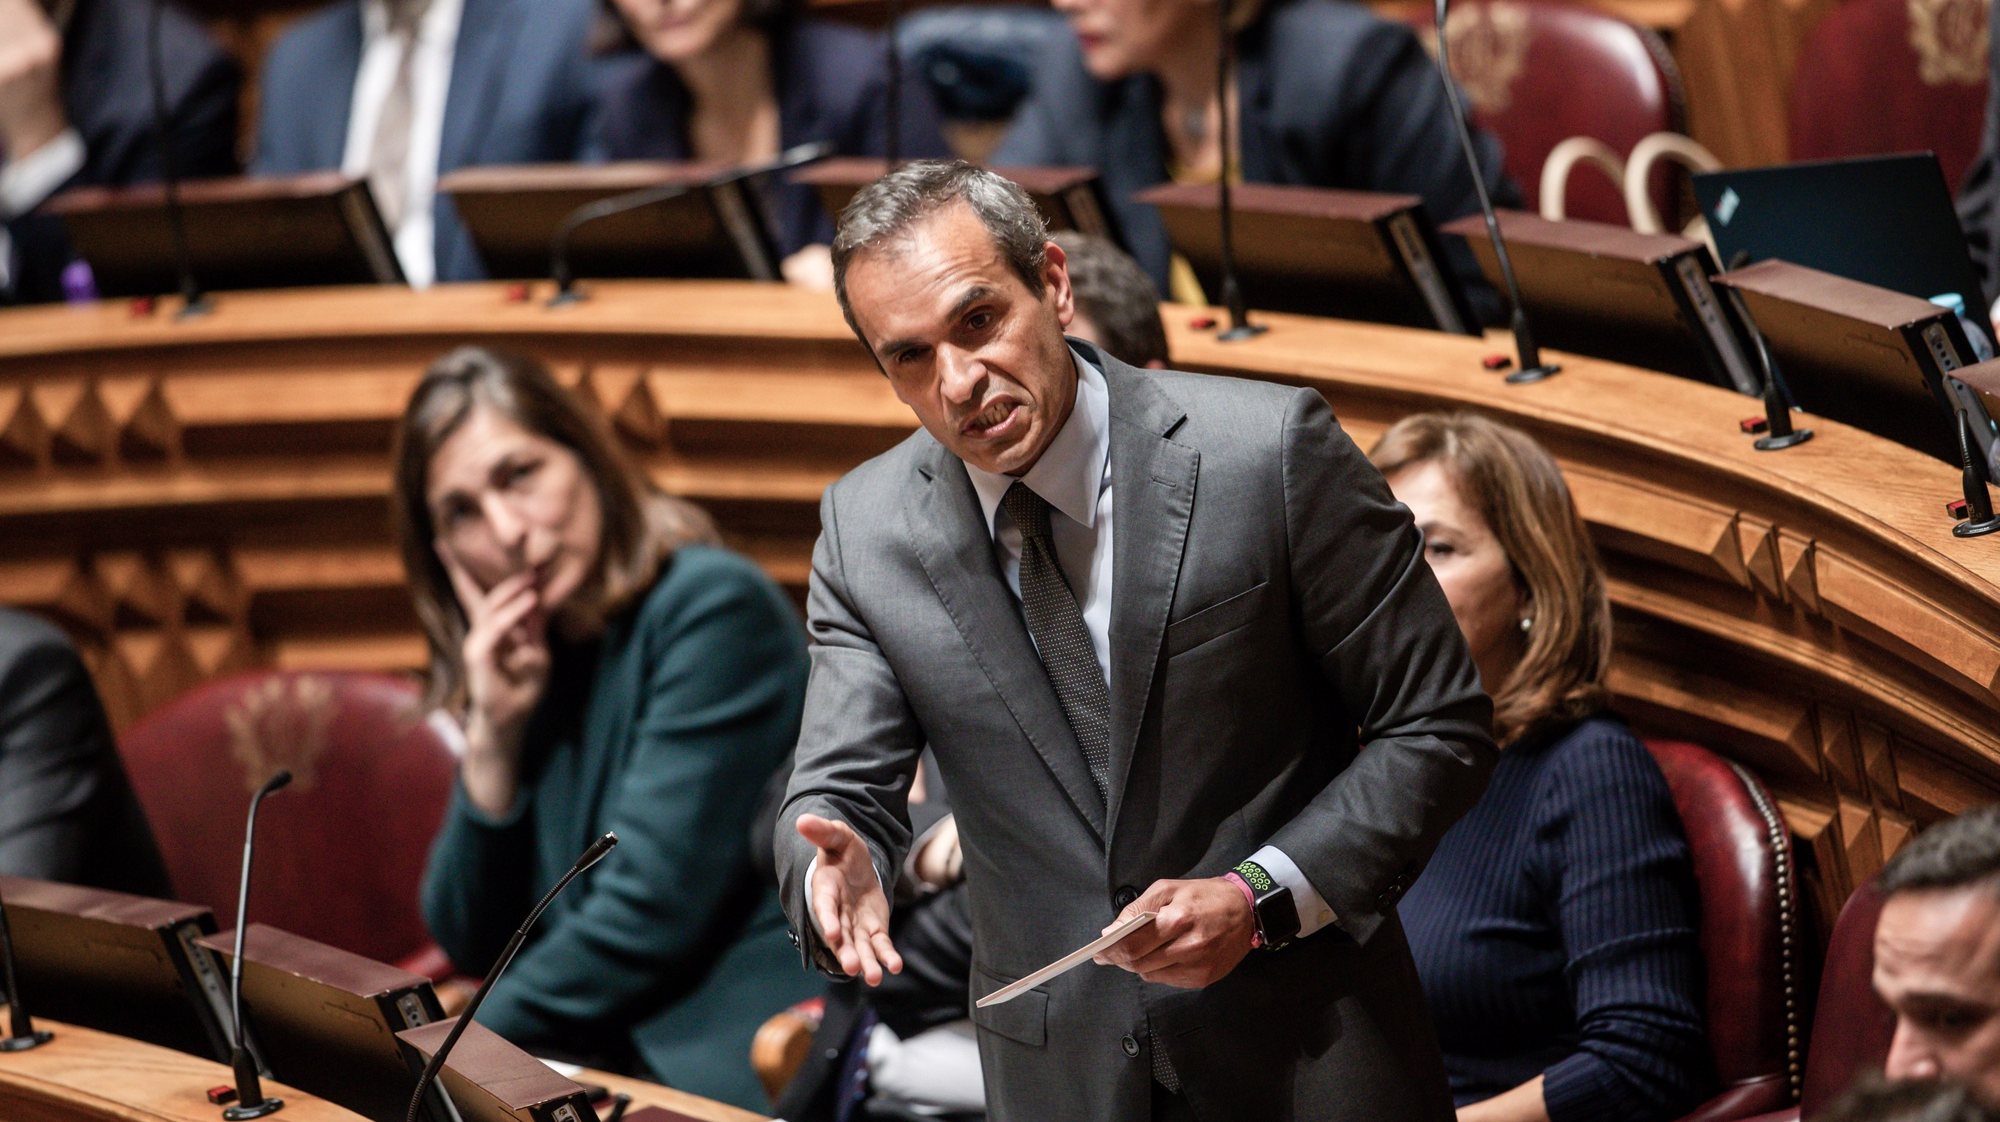 O deputado do Partido Socialista (PS), Carlos Pereira, usa da palavra durante o debate quinzenal na Assembleia da República, em Lisboa, 04 de março de 2020. JOSÉ SENA GOULÃO/LUSA